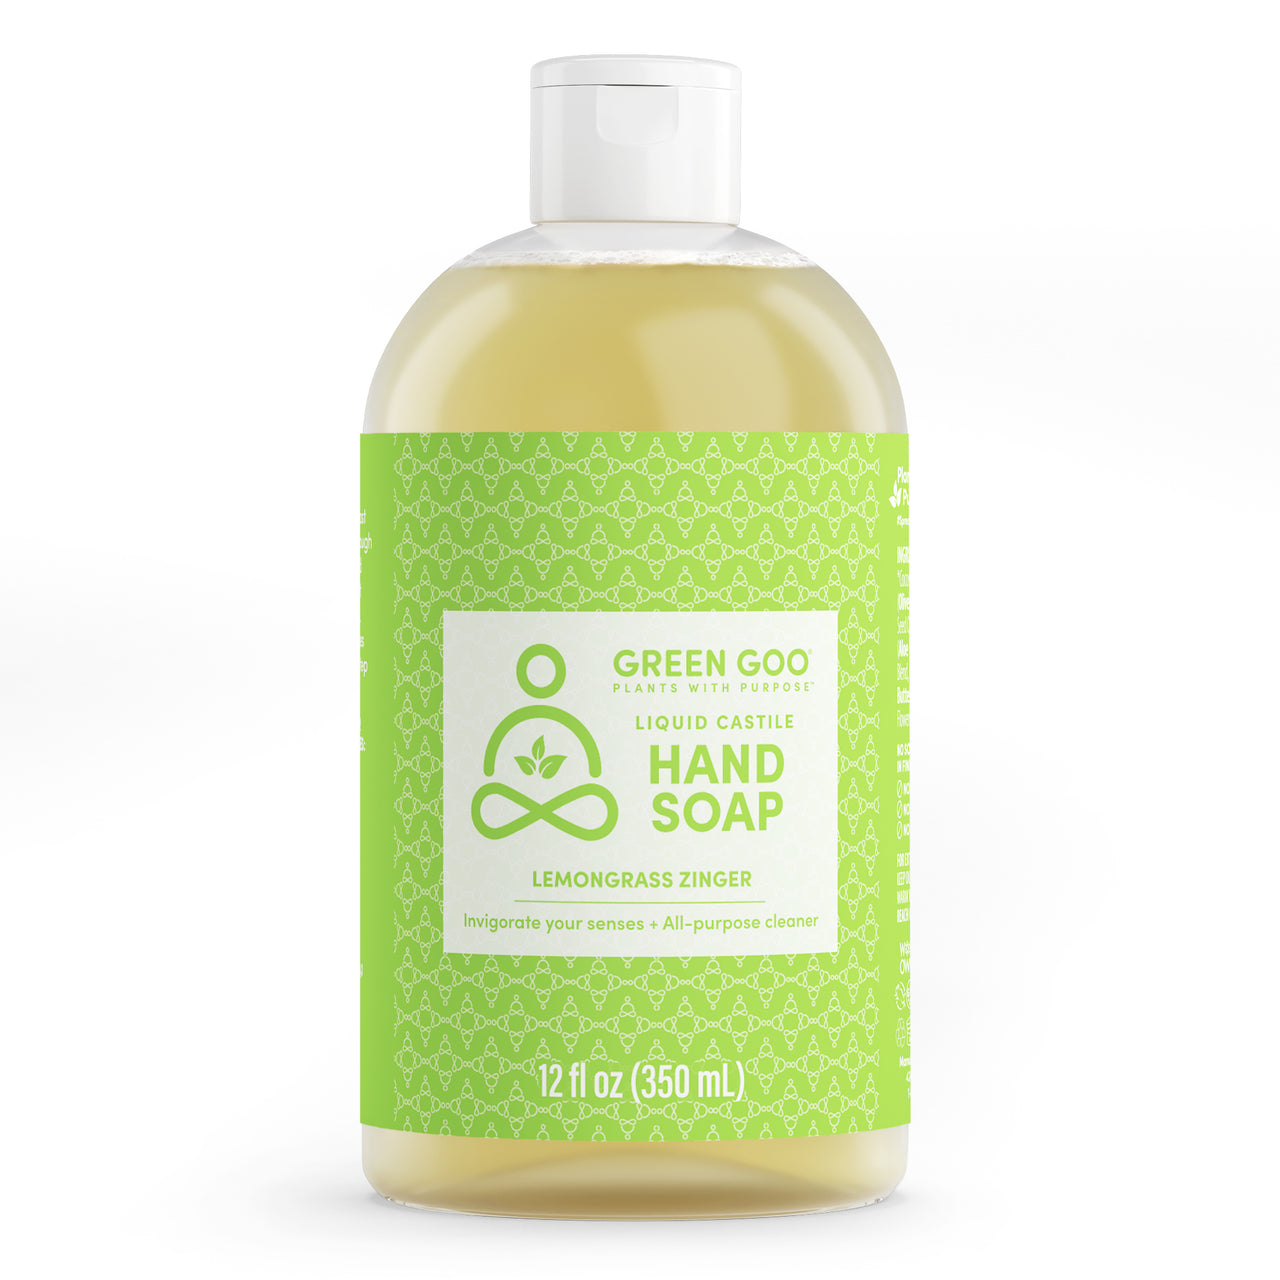 Liquid Castile Hand Soap - Lemongrass Zinger